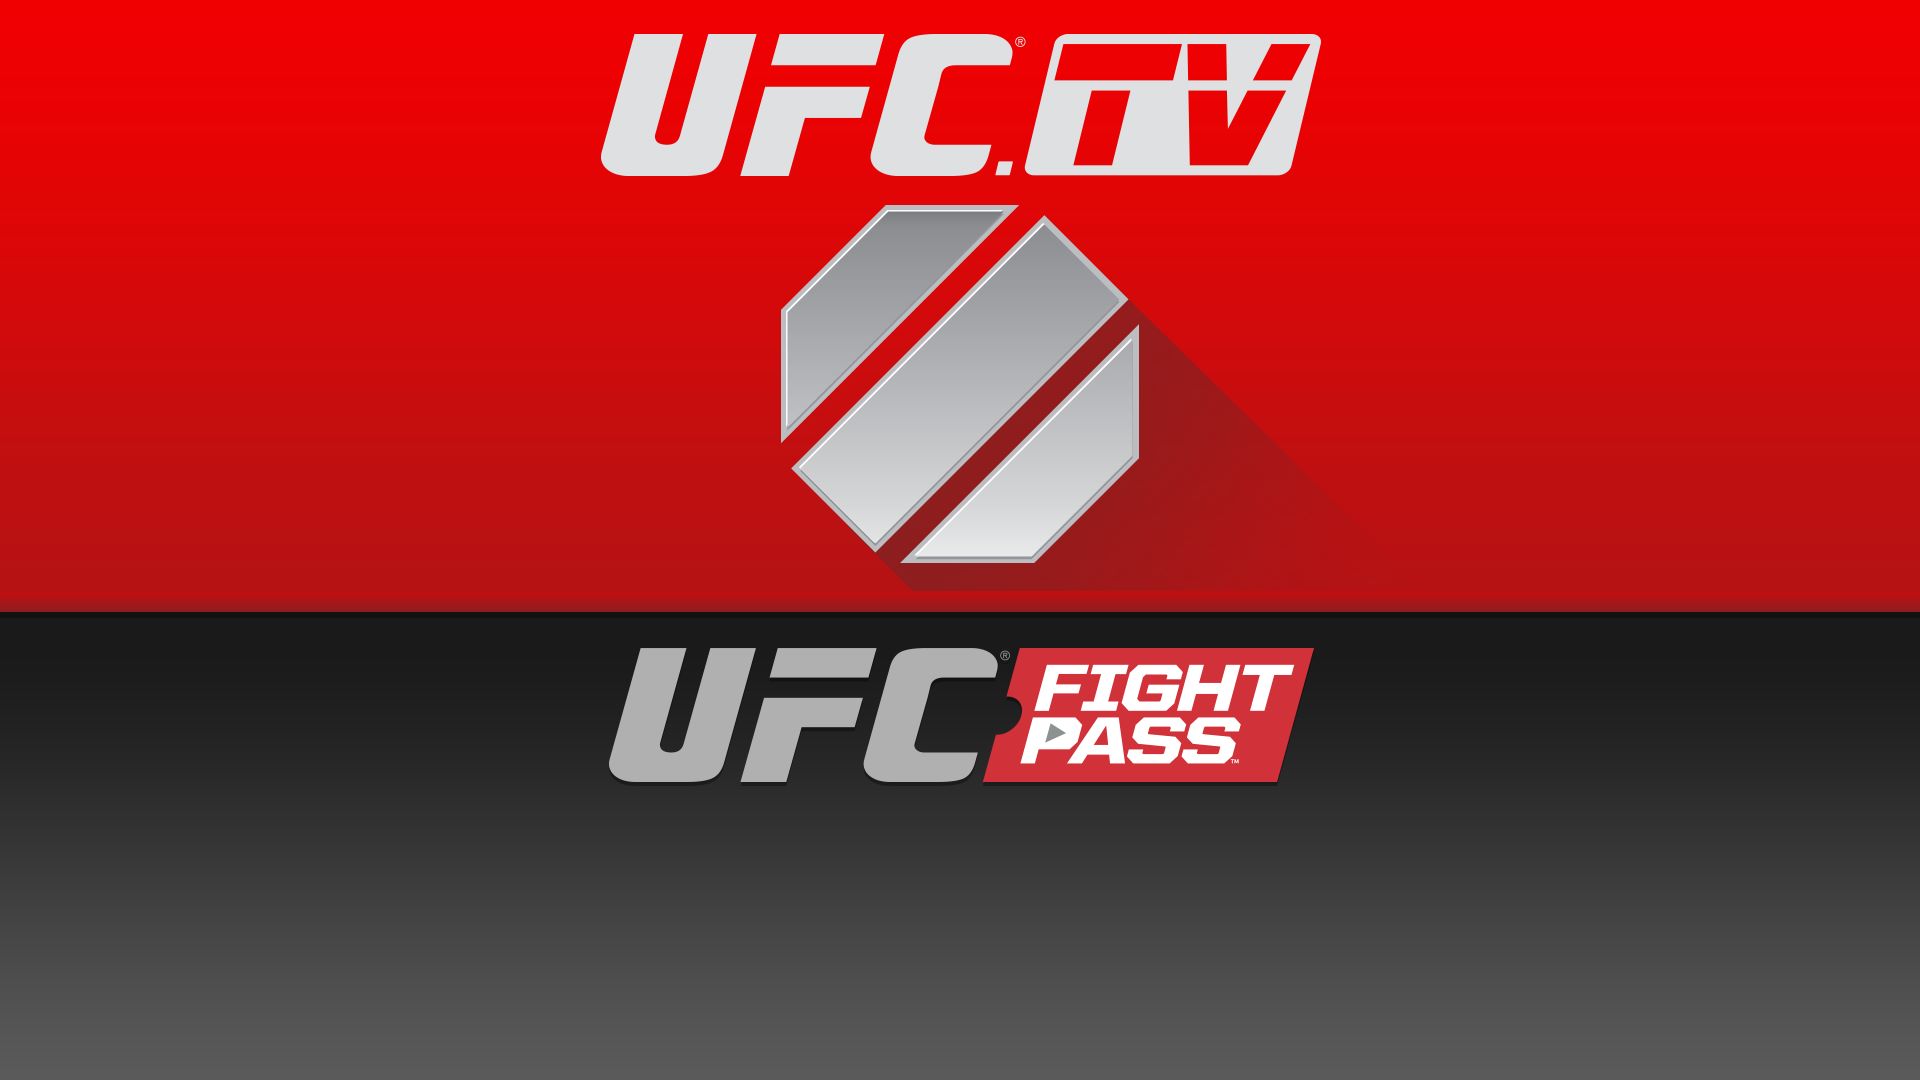 How to watch UFC Online- UFC.TV